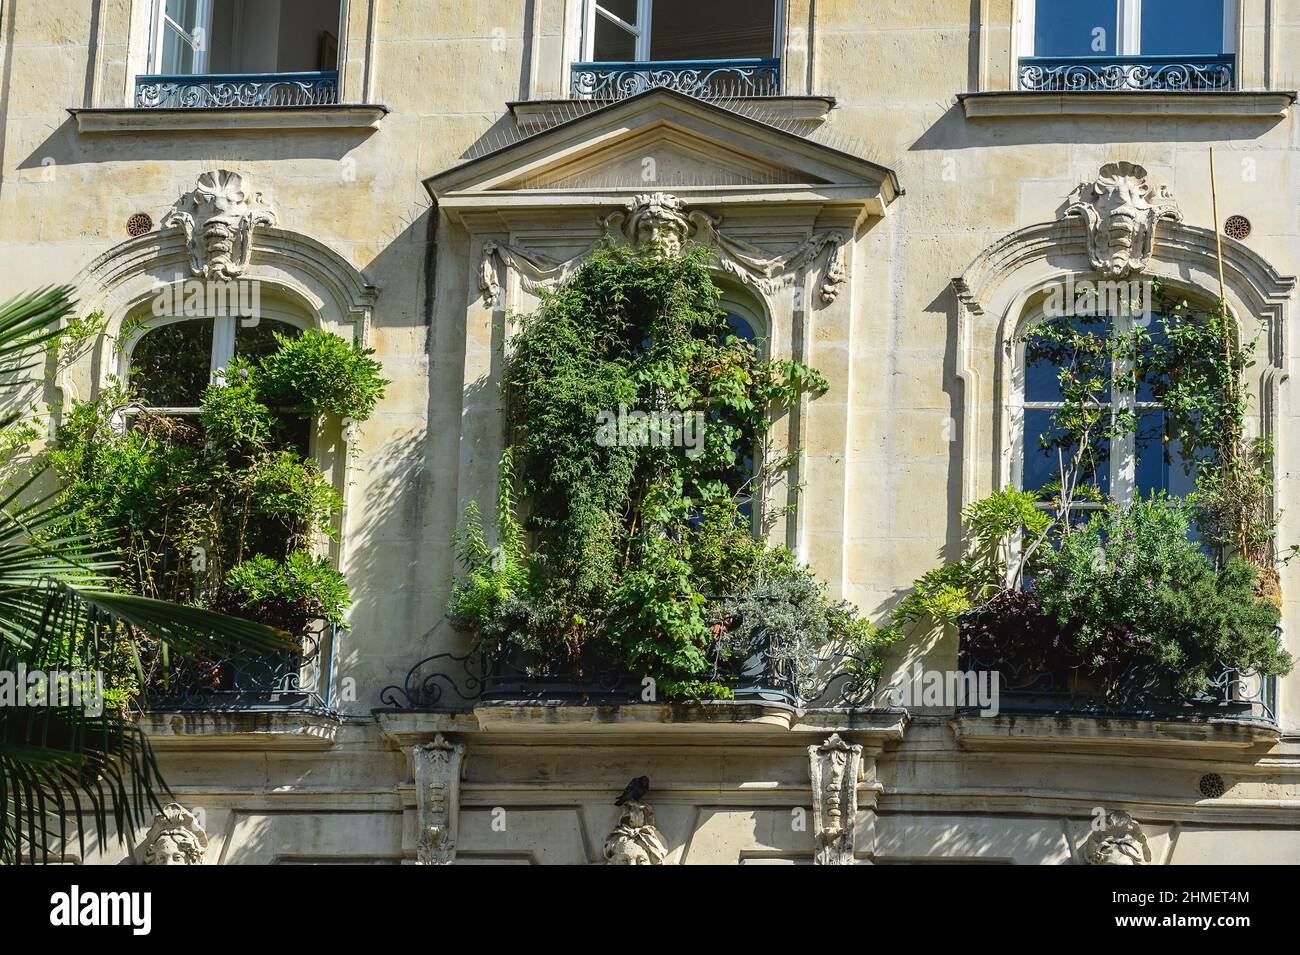 Evolution des prix de l'immobilier est a la baisse - Prix du metre carre en diminution - Balcon vegetal |  Housing in Paris - evolution of the square Stock Photo